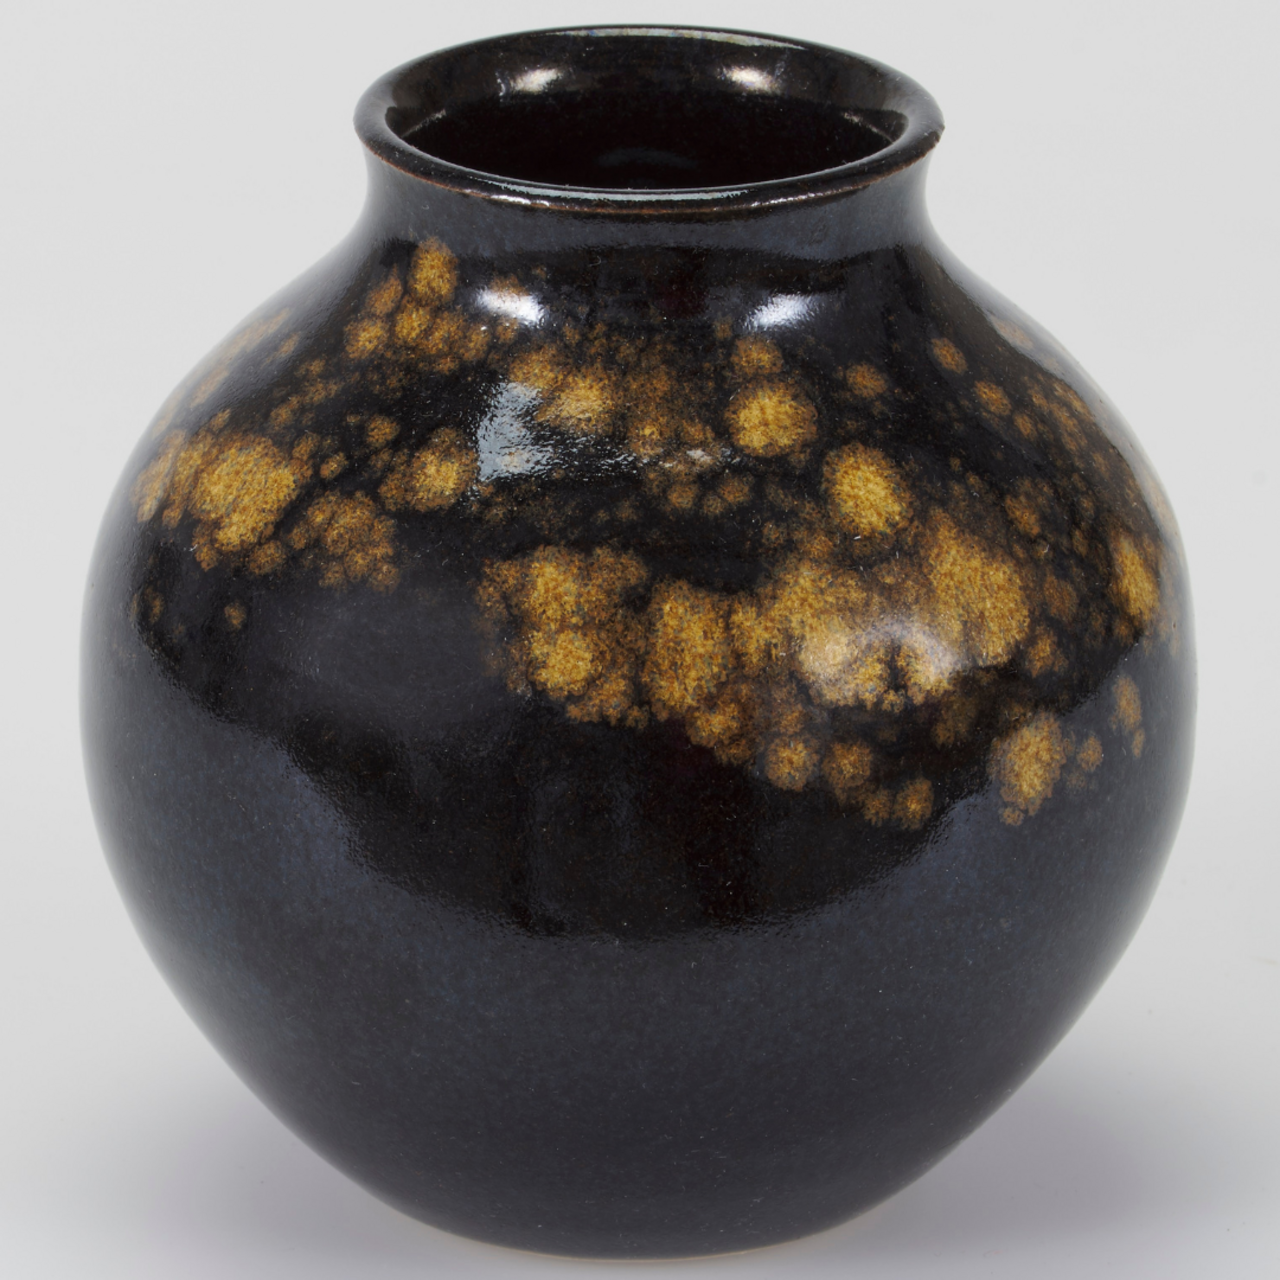 Elisabeth Grosser, Gebauchte Vase, 1980, Steinzeug, freigedreht, glänzende, leicht porige Temmokuglasur mit goldgelben Aventurinflecken